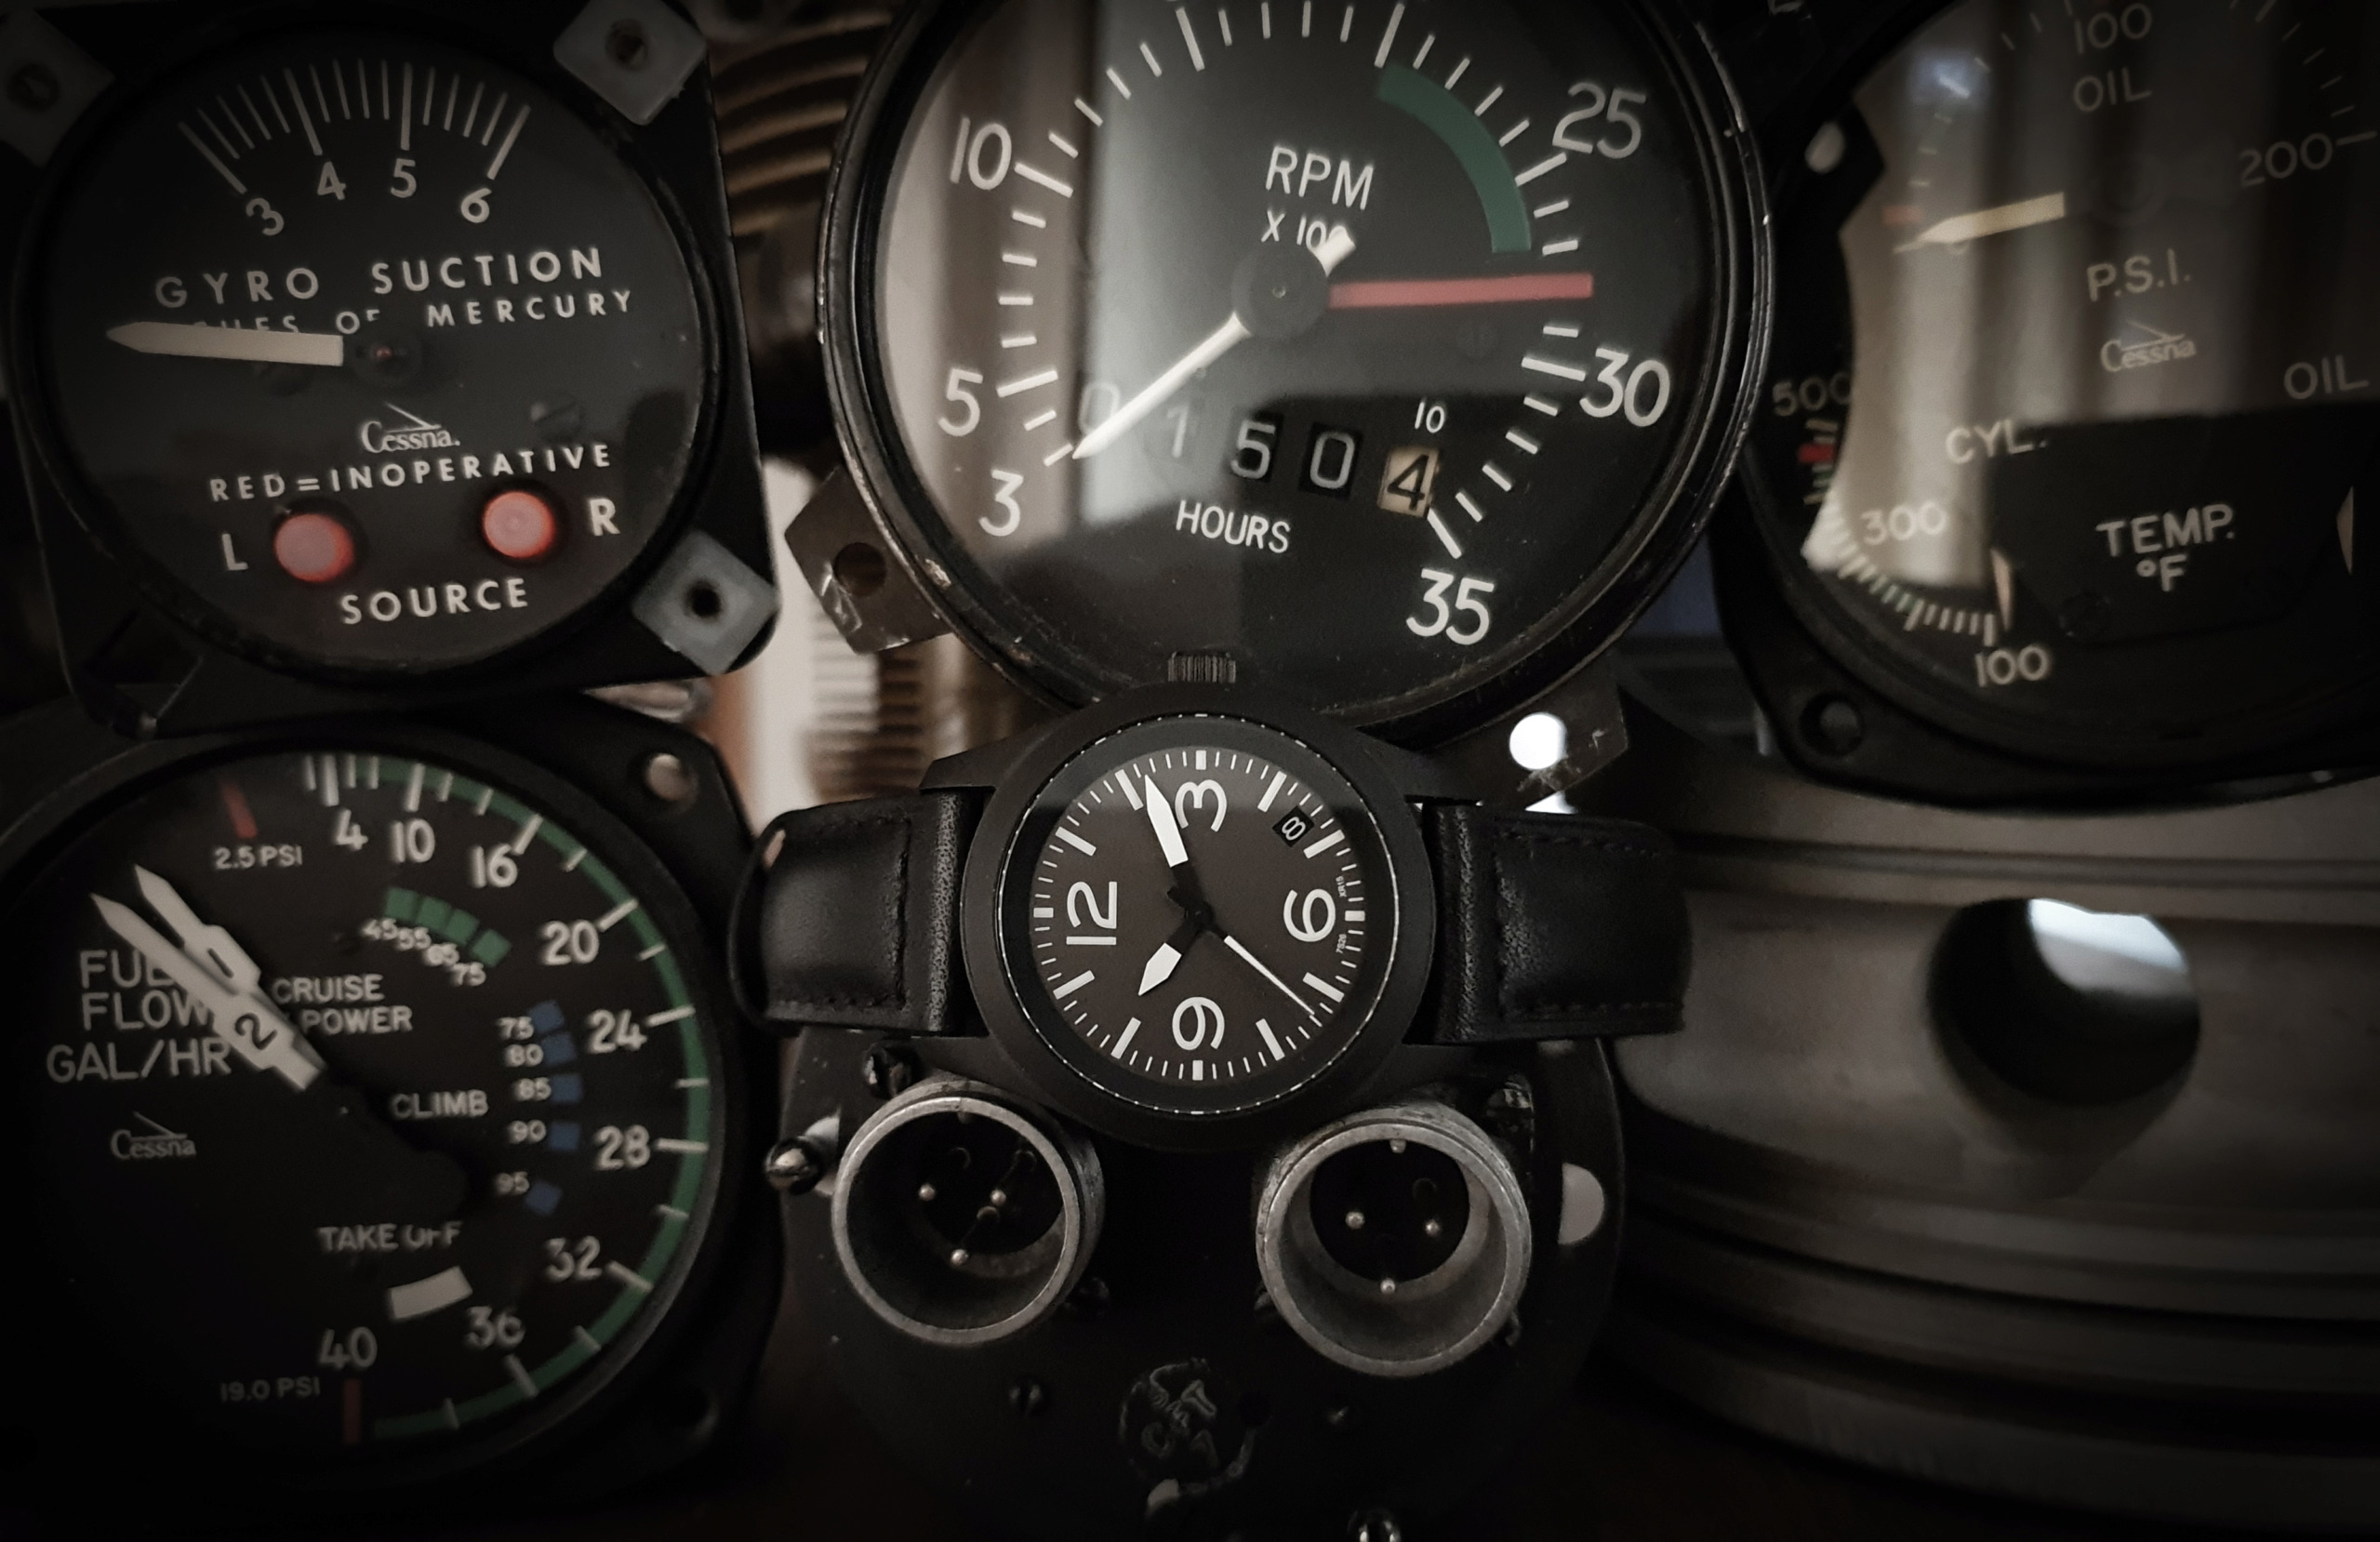 flieger - Feu de vos montres d'aviateur, ou inspirées du monde aéronautique - Page 17 20210912